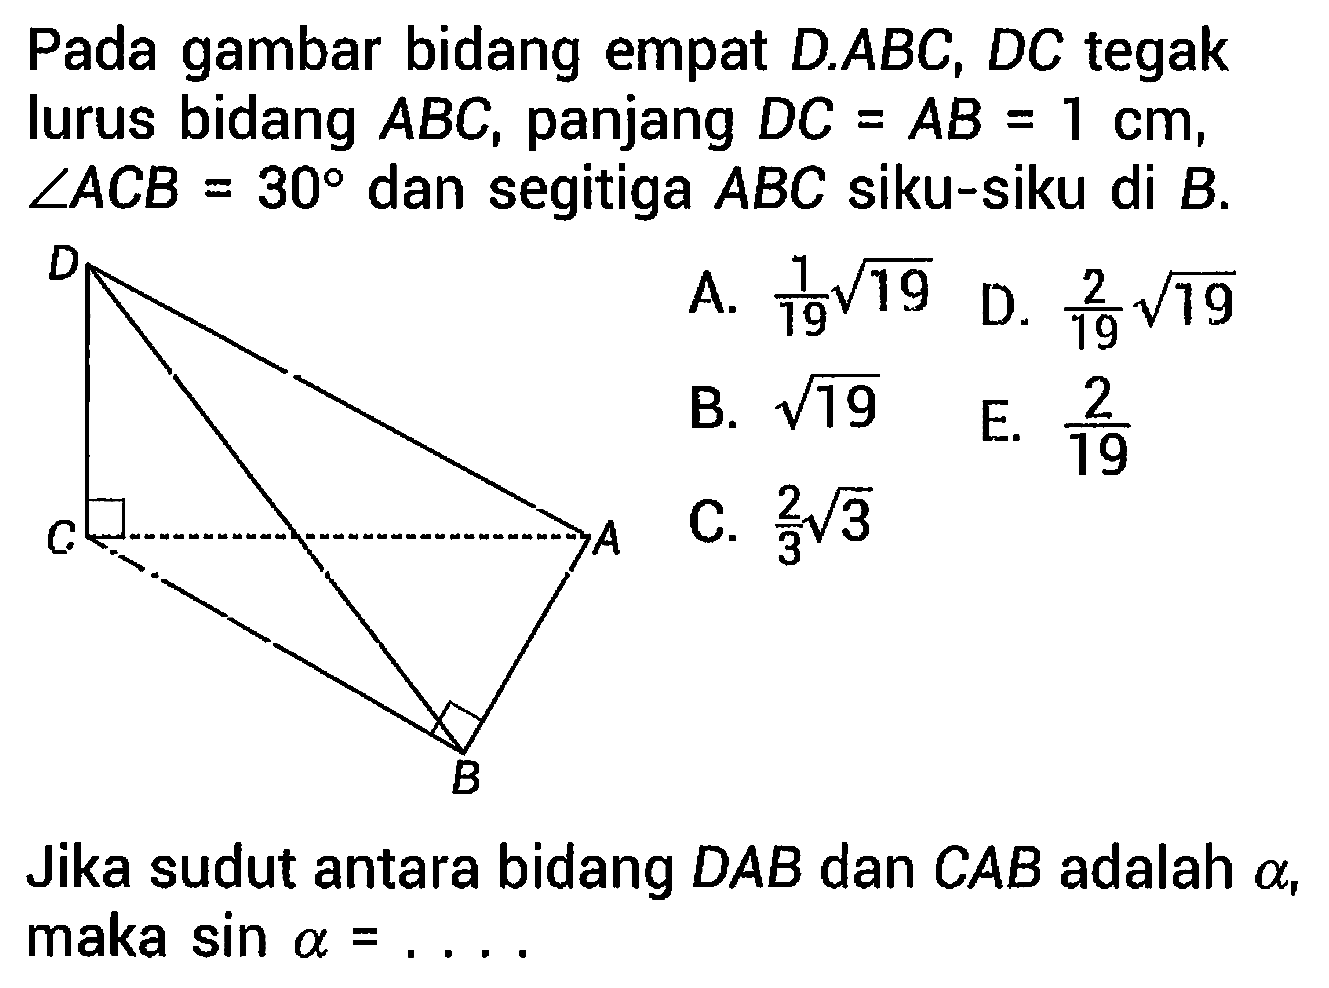 Pada gambar bidang empat  D . A B C, D C  tegak lurus bidang  A B C , panjang  D C=A B=1 cm ,  sudut A C B=30  dan segitiga  A B C  siku-siku di  B .  

Jika sudut antara bidang DAB dan CAB adalah  a , maka  sin a=... .